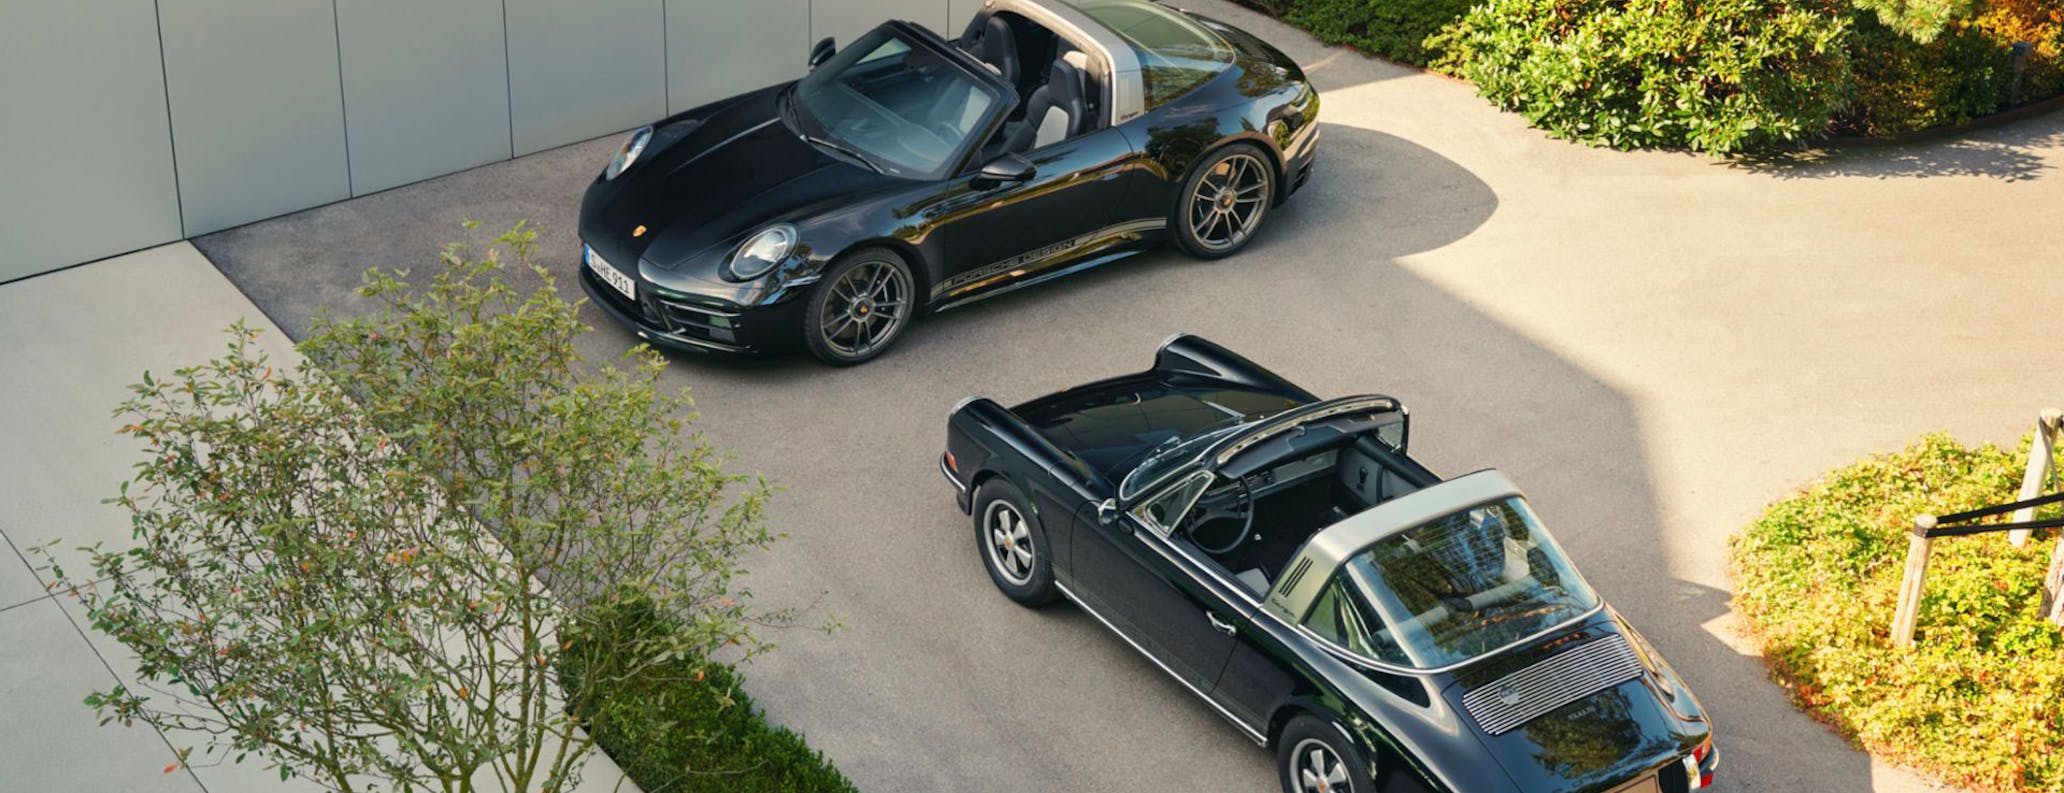 911 Porsche Design 50th Anniversary Edition in leafy courtyard